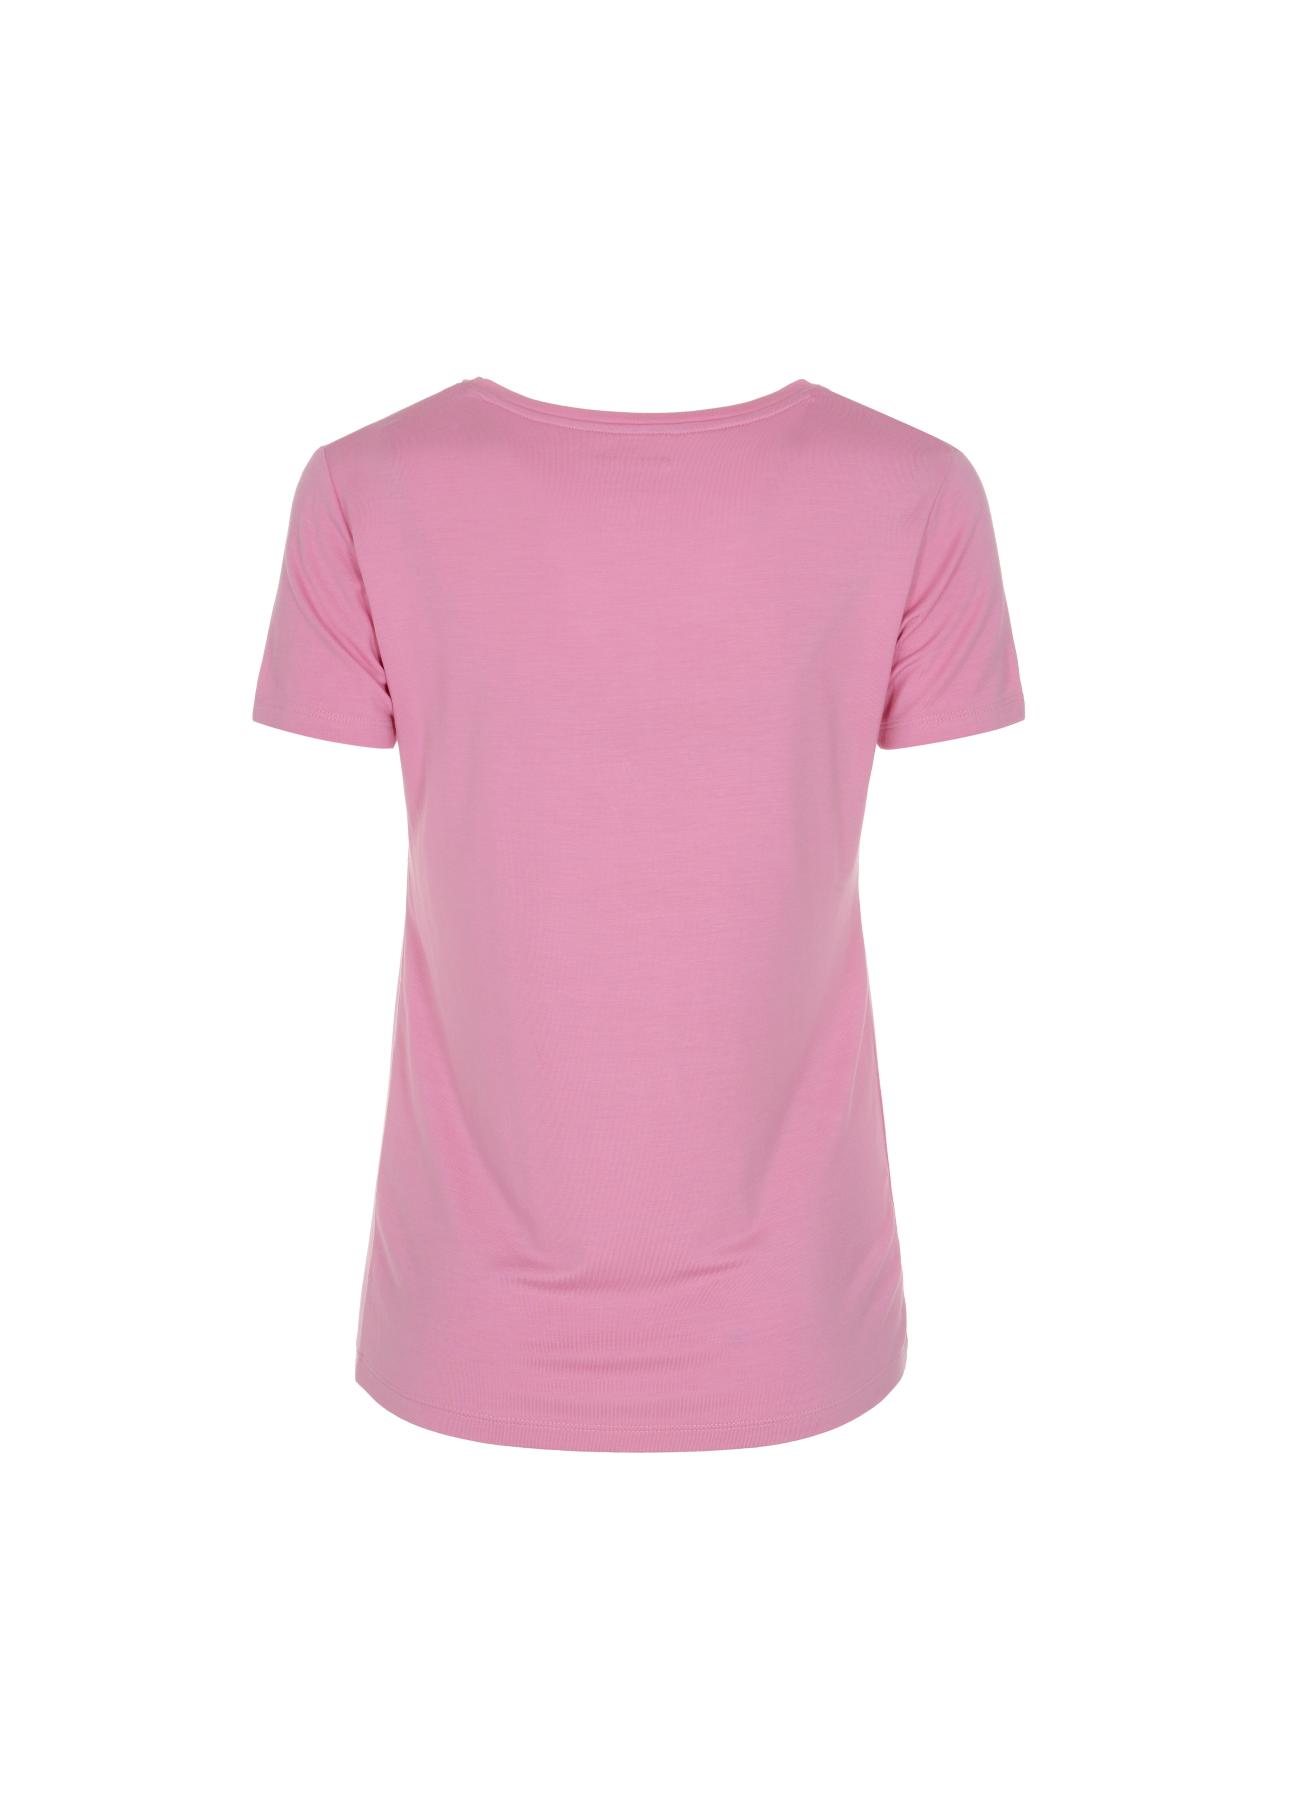 Różowy T-shirt damski z wilgą TSHDT-0086-31(W22)